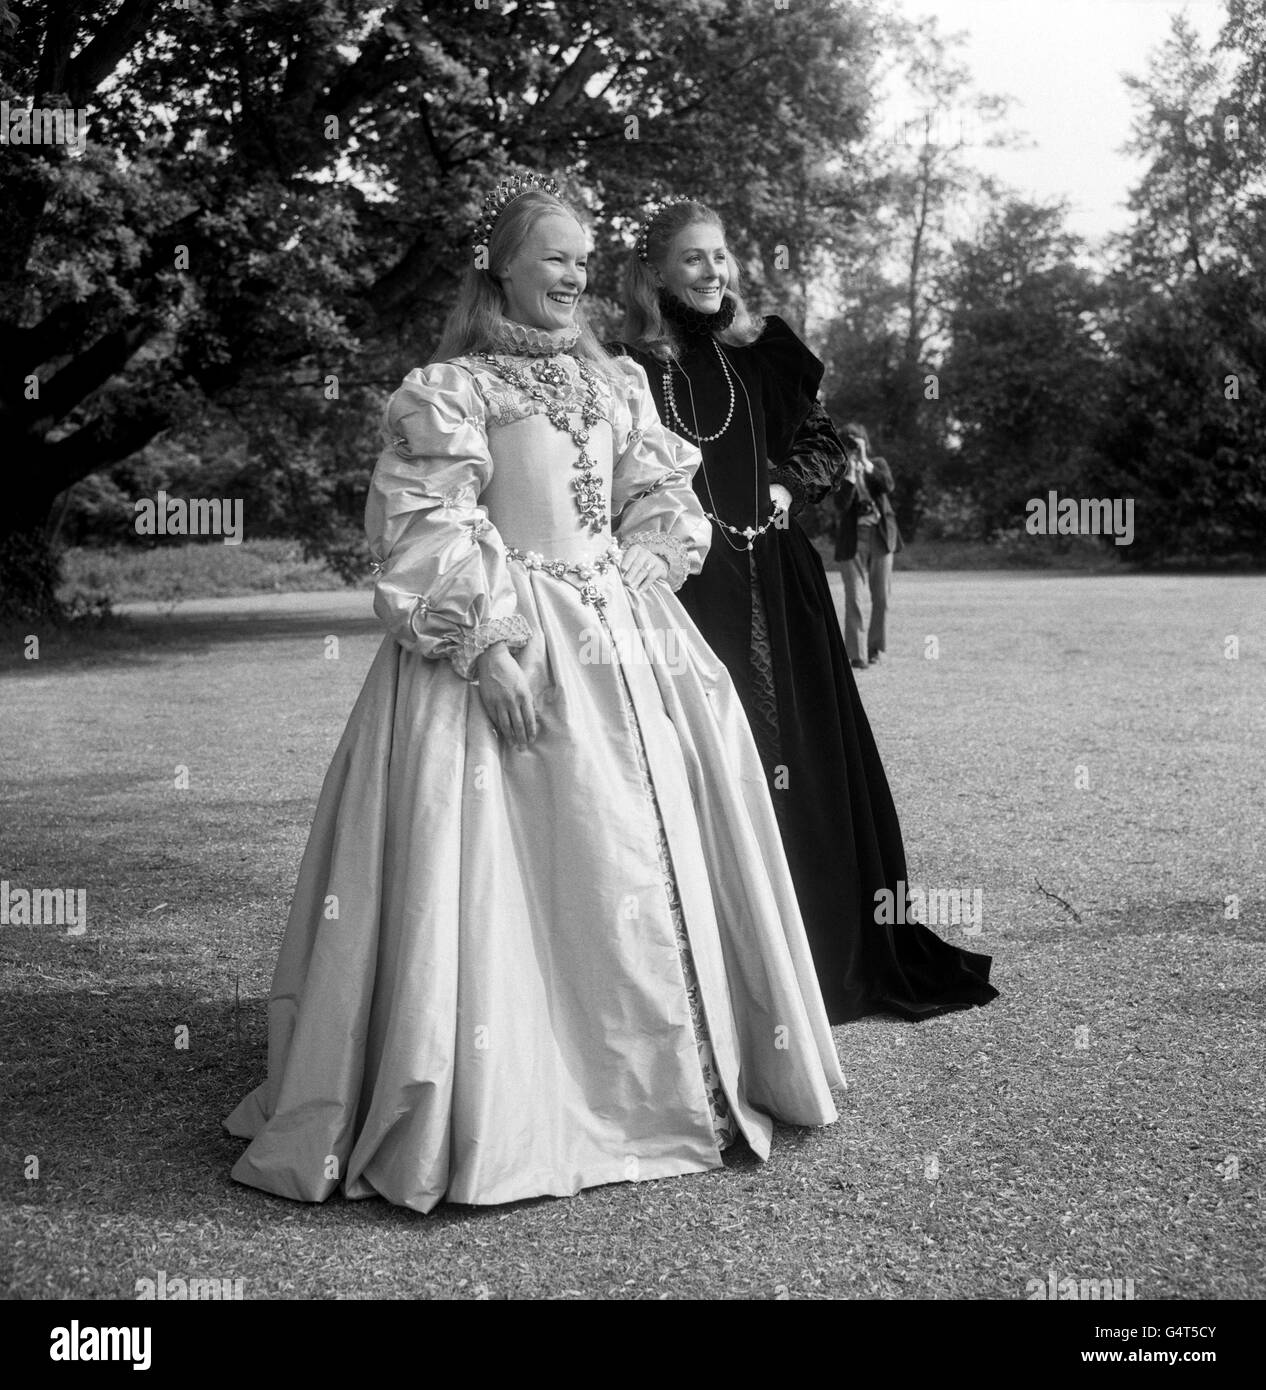 Glenda Jackson, die Oscar-Preisträgerin, als Königin Elisabeth I. von England, mit Vanessa Redgrave, rechts, als Mary Queen of Scots. Sie sind am Set eines neuen Films, Hal Wallis's Produktion von 'Mary, Queen of Scots' Stockfoto